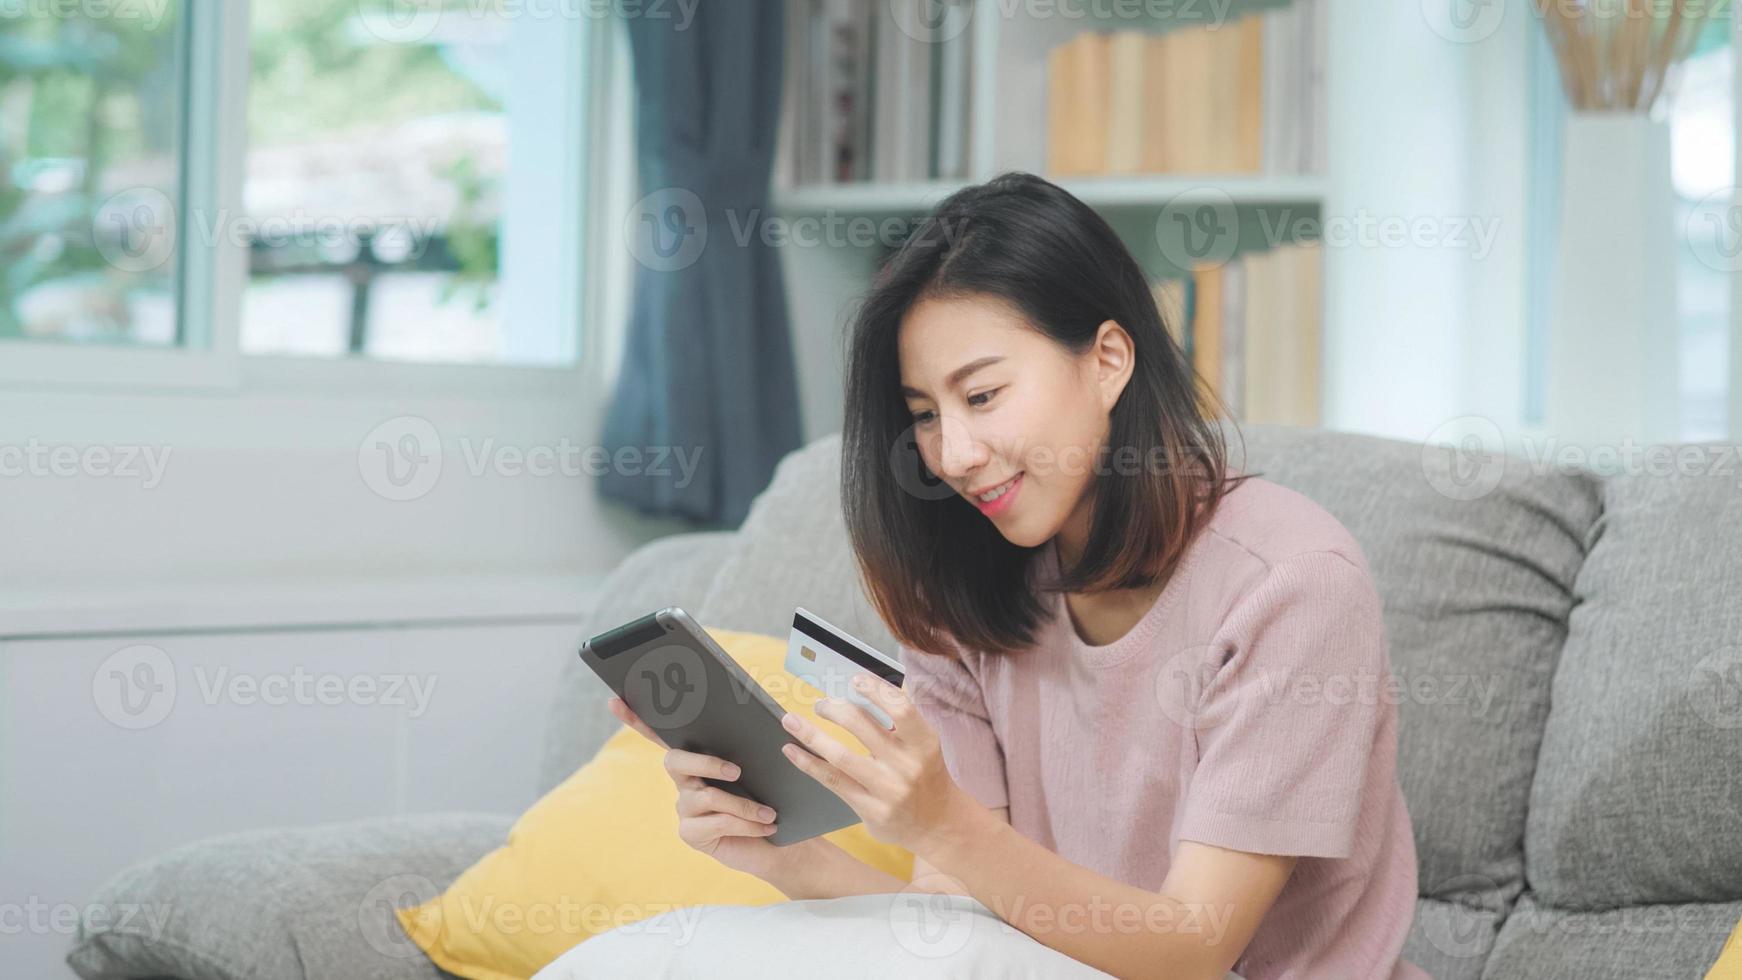 jeune femme asiatique souriante utilisant une tablette achetant des achats en ligne par carte de crédit en position allongée sur un canapé lorsque vous vous détendez dans le salon à la maison. femmes d'ethnie latine et hispanique de style de vie au concept de maison. photo